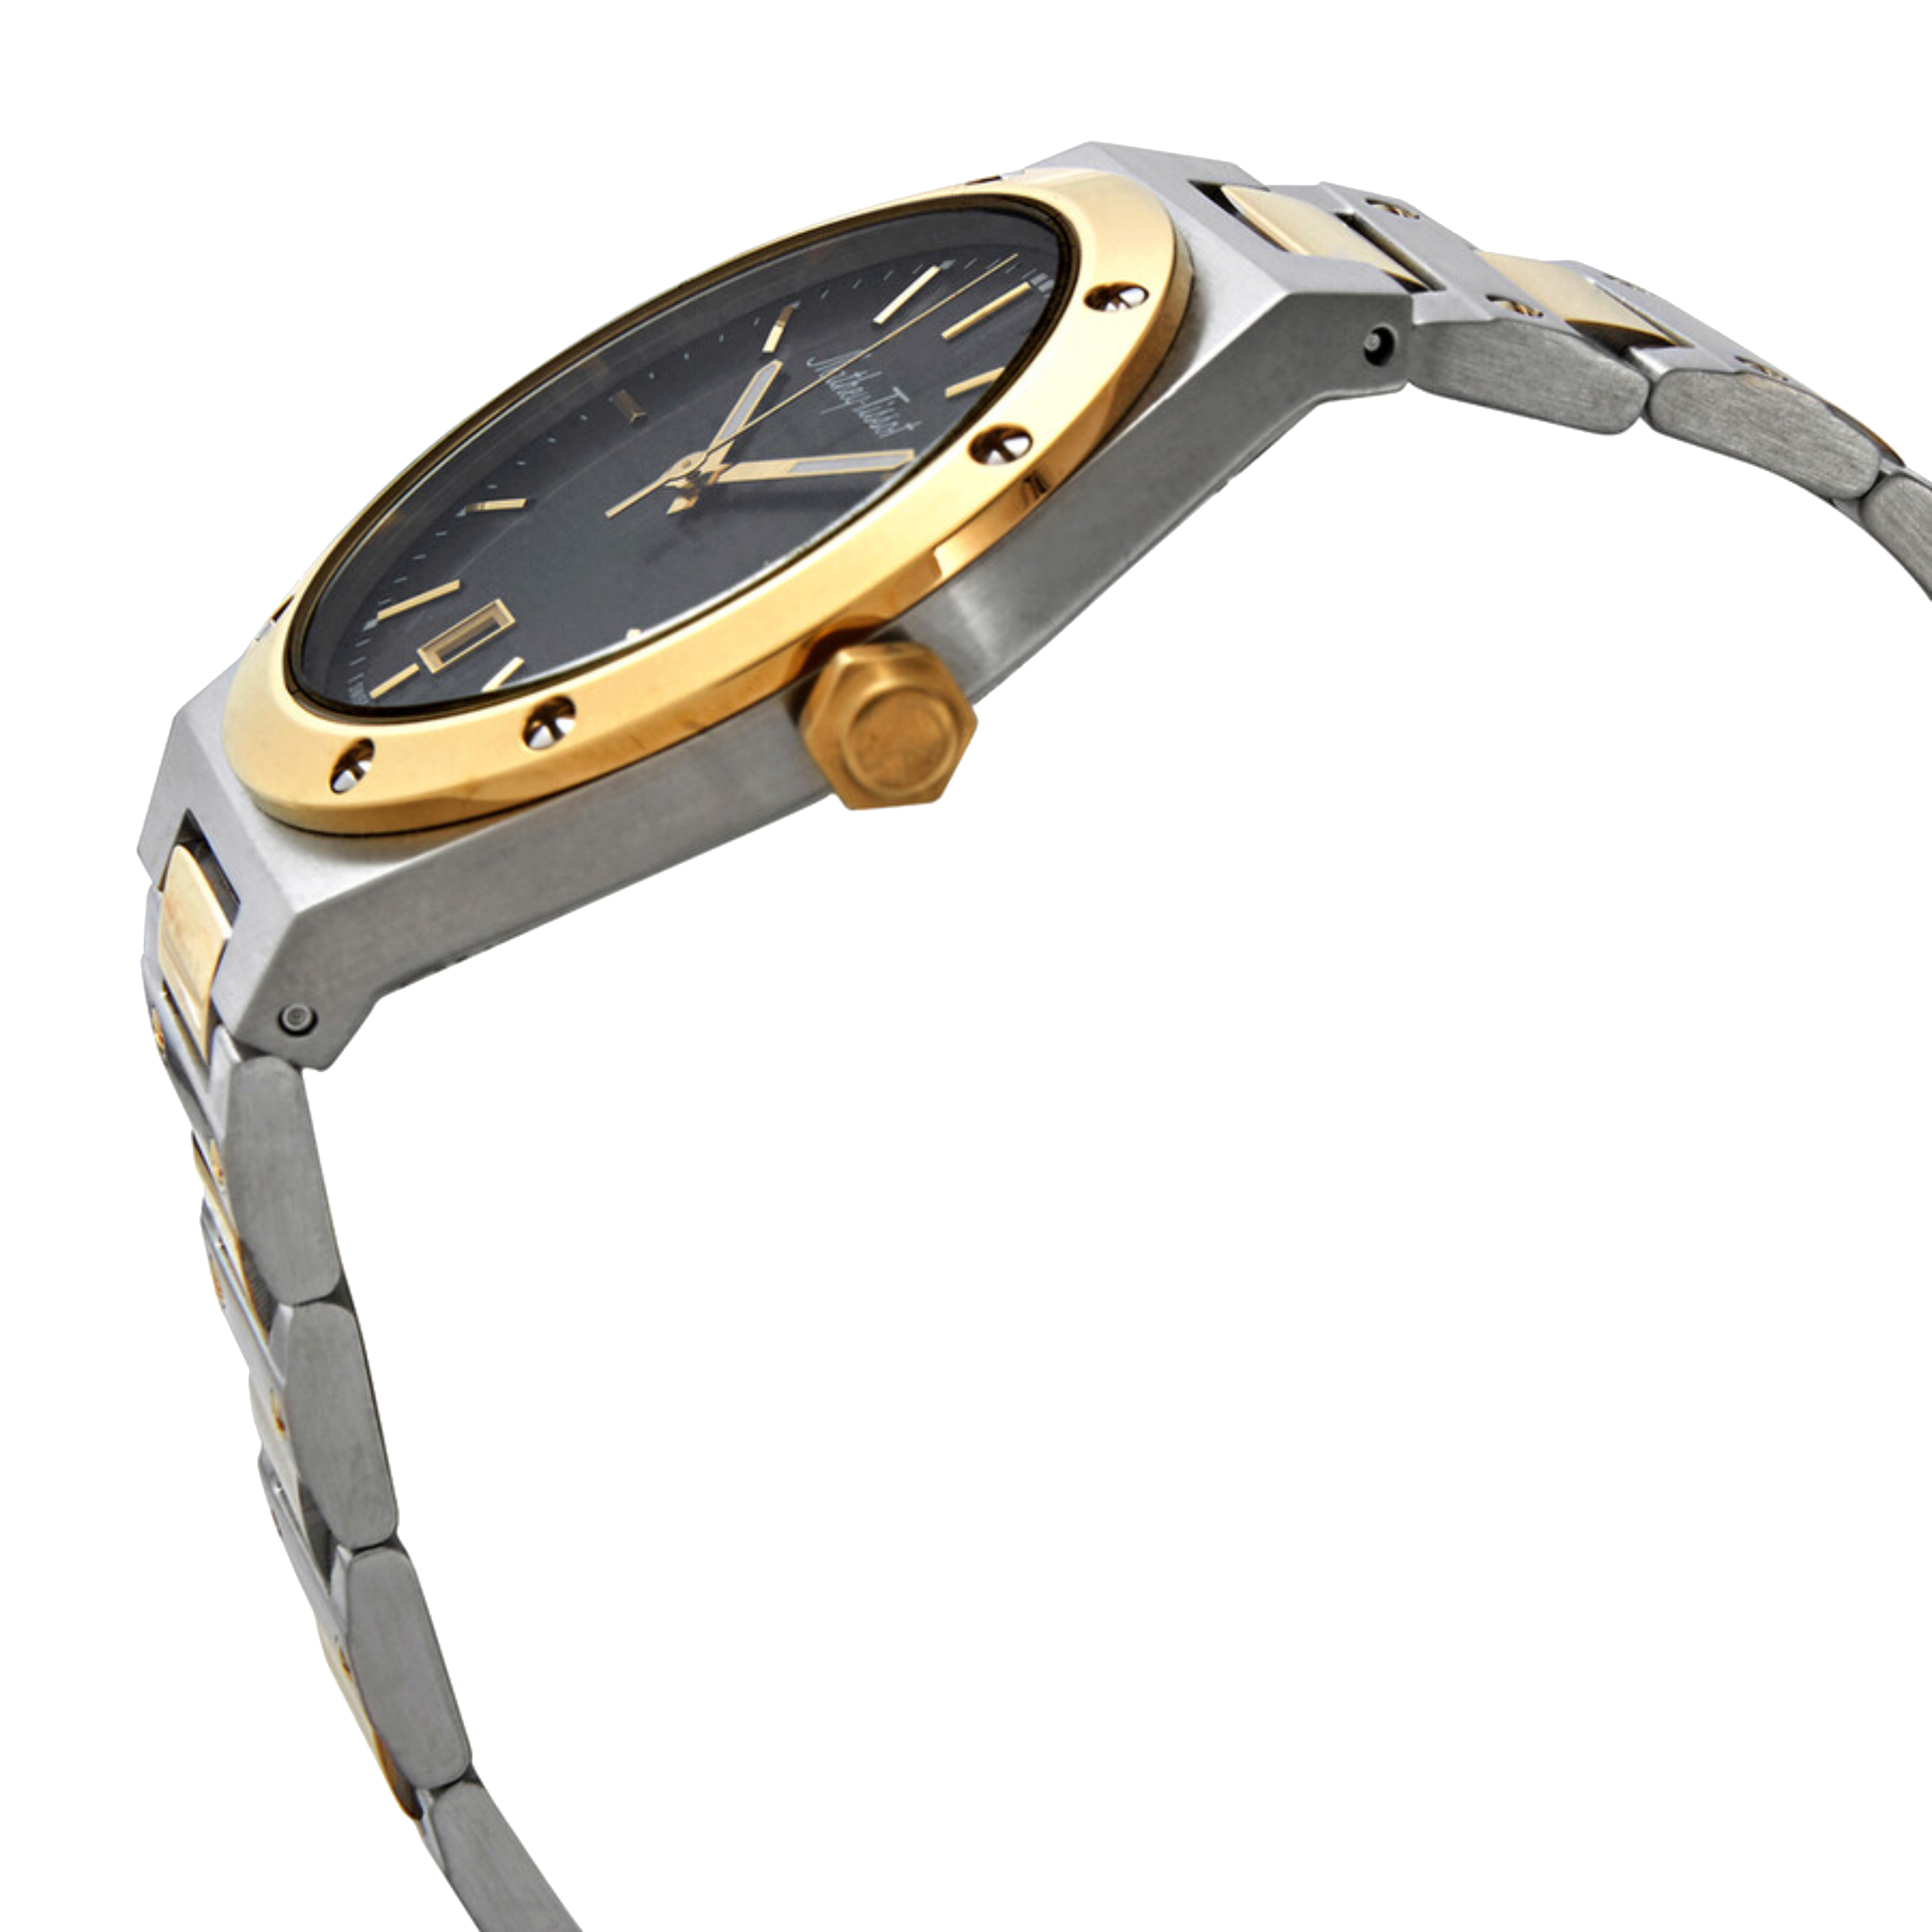 שעון יד לגבר Mathey Tissot H680BN 41mm צבע כסף/זהב/שחור/זכוכית ספיר - אחריות לשנתיים